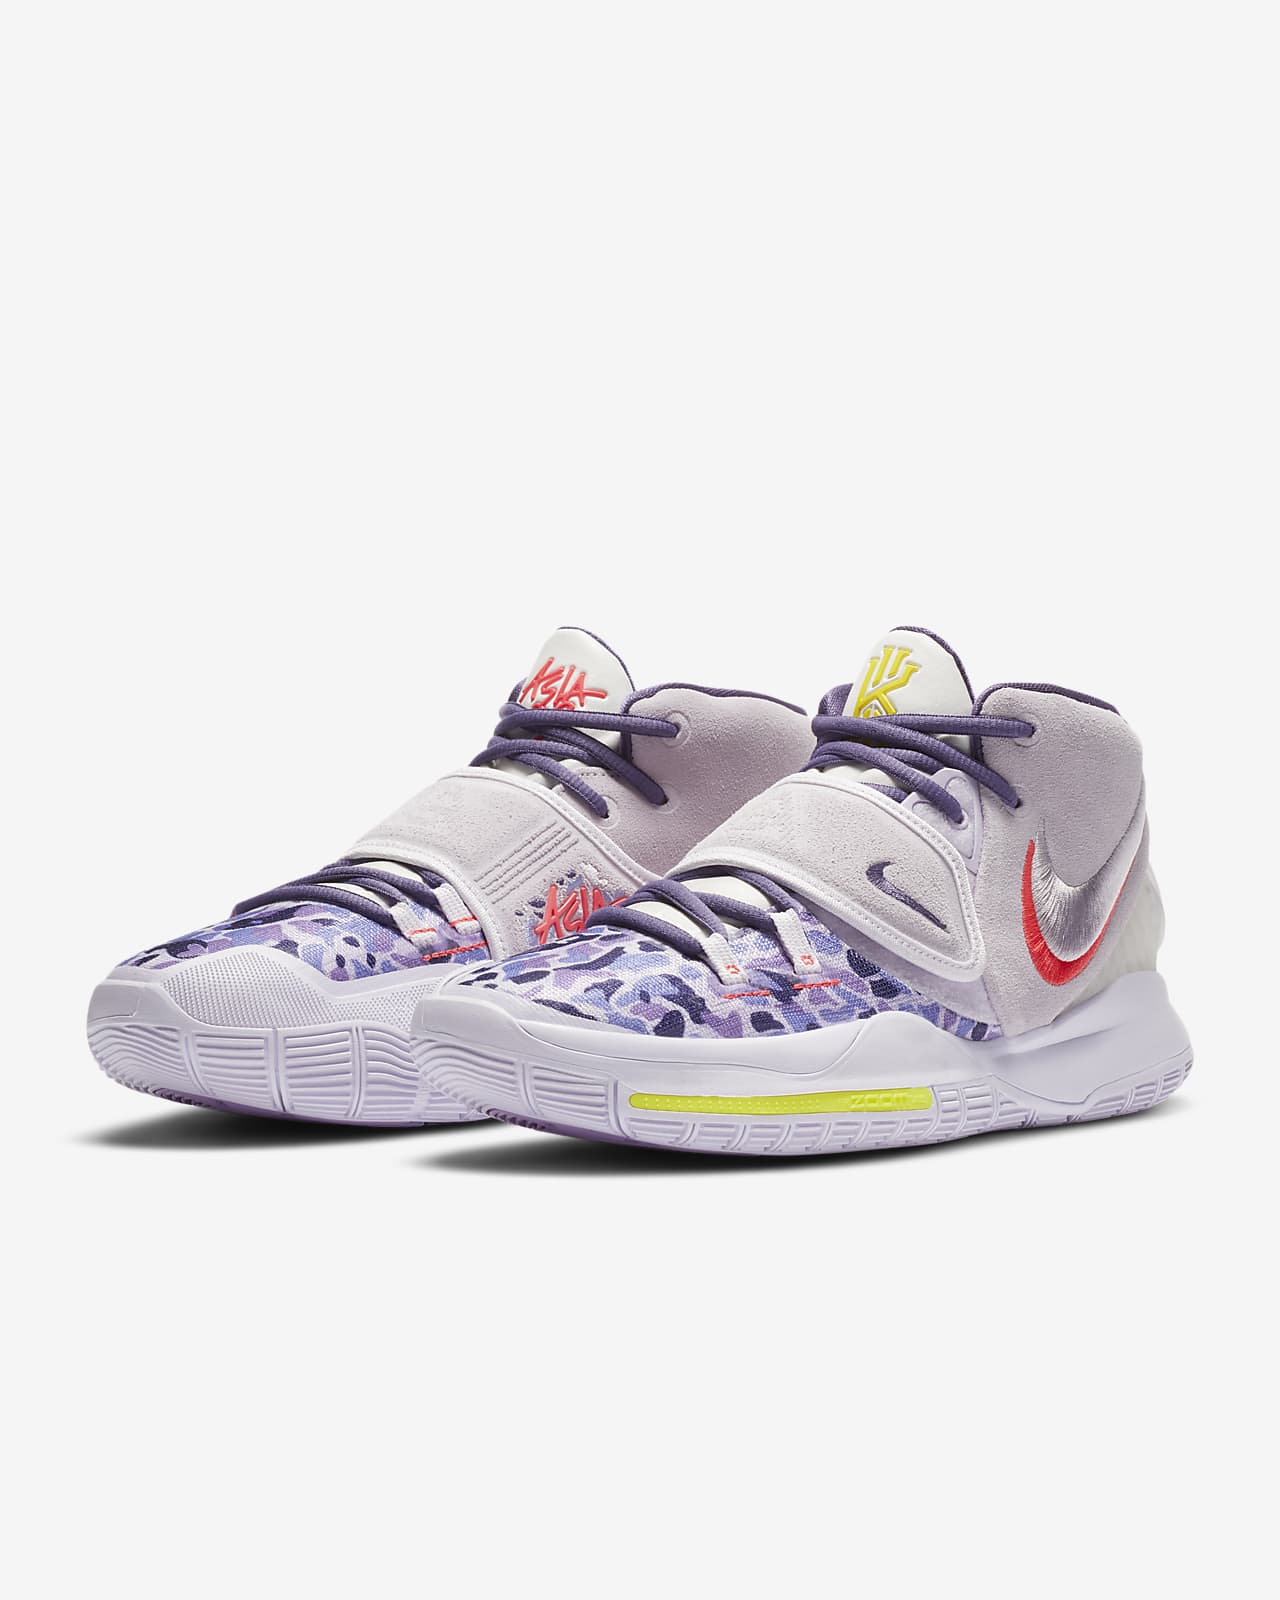 Nike Kyrie 6 Enlightenment bq4630 500 Sneakerhead.com